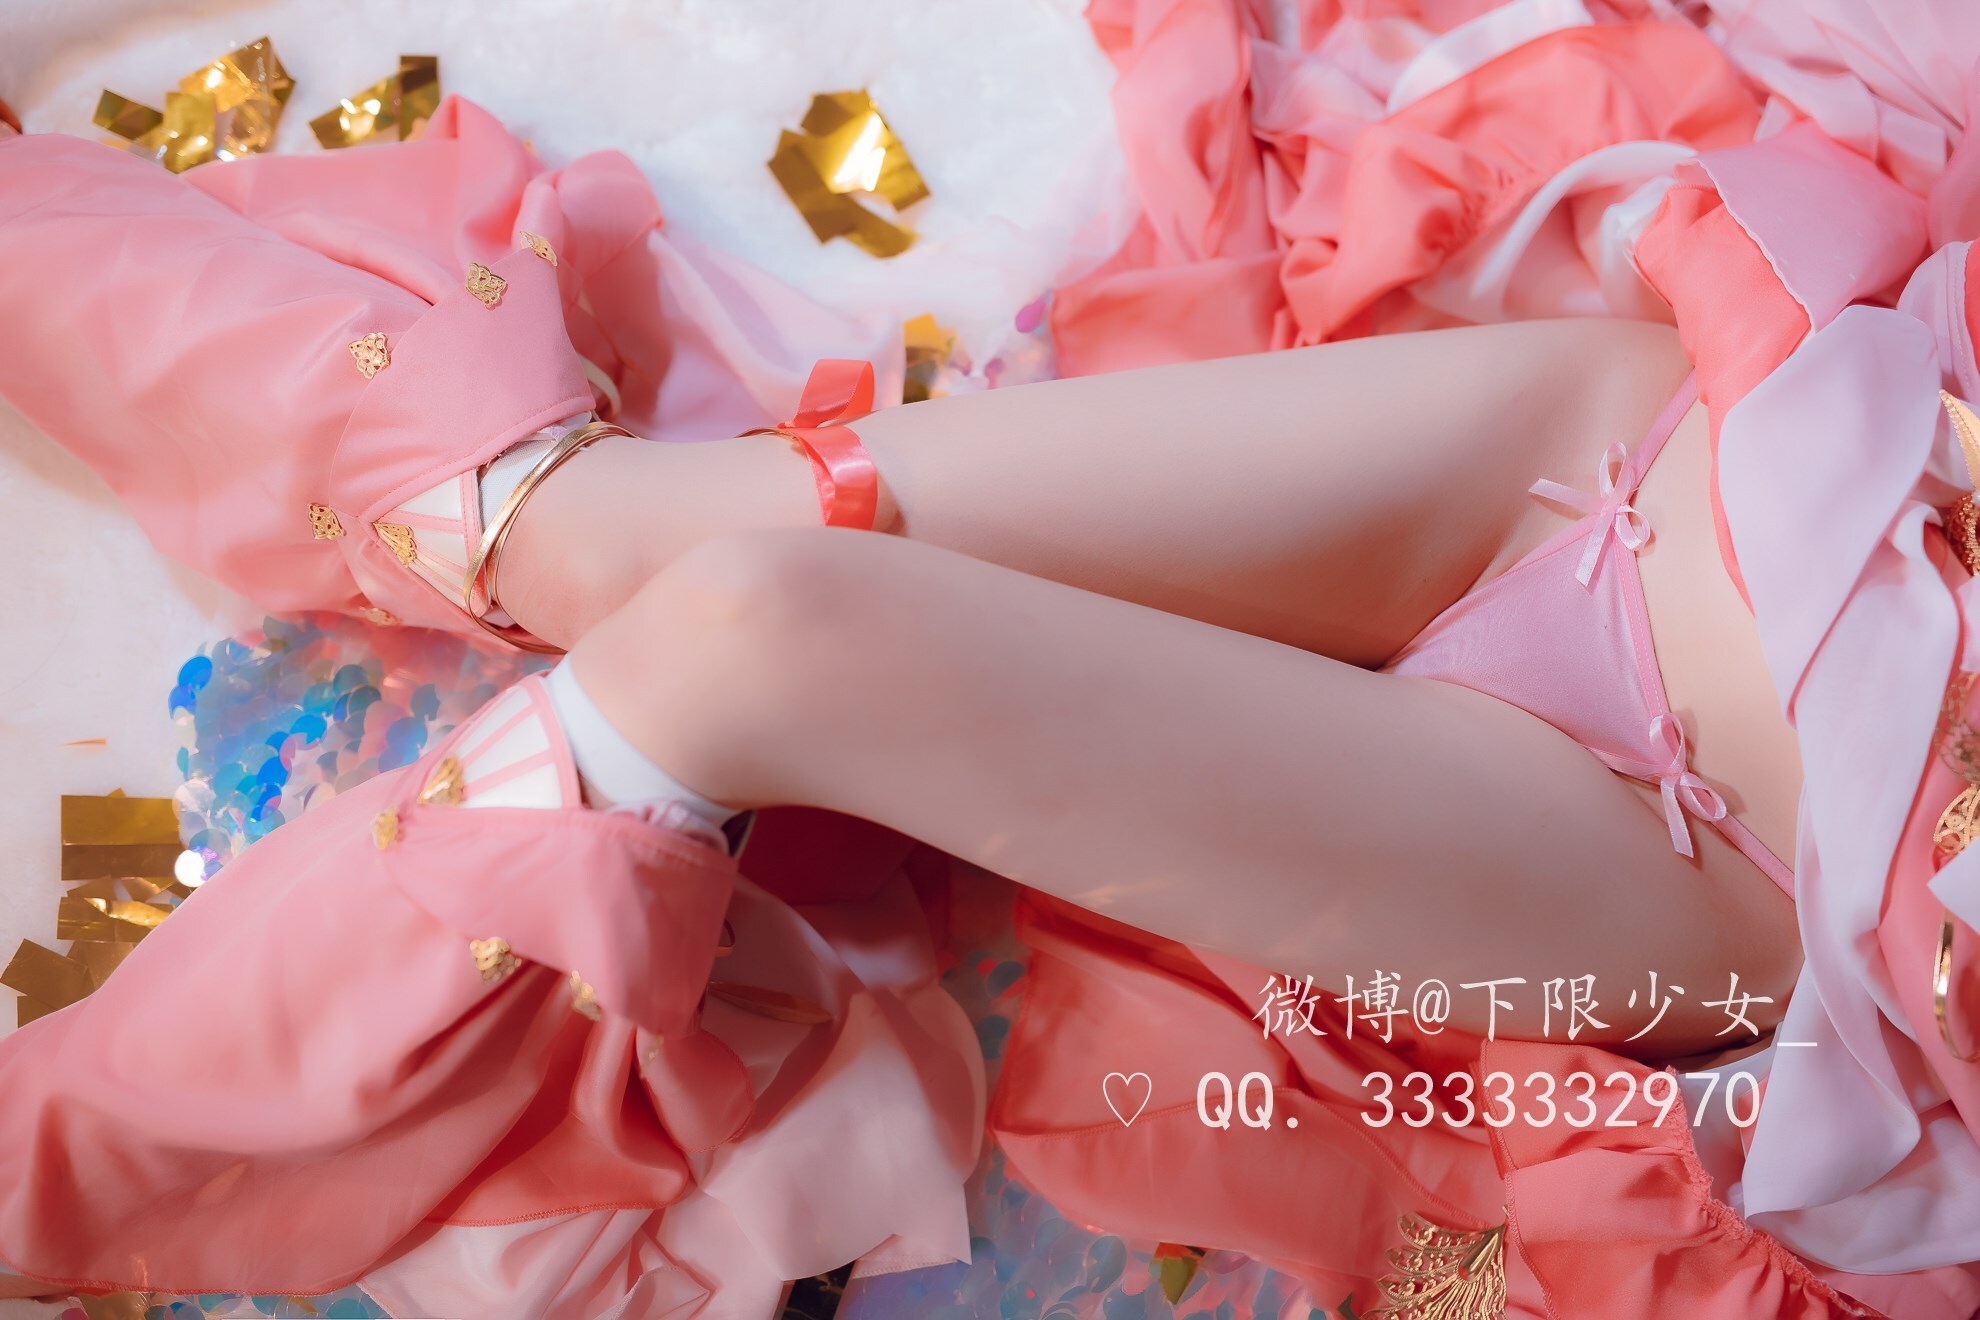 Miaowu sauce girl (lower limit girl) - Xuehe Xiuluo